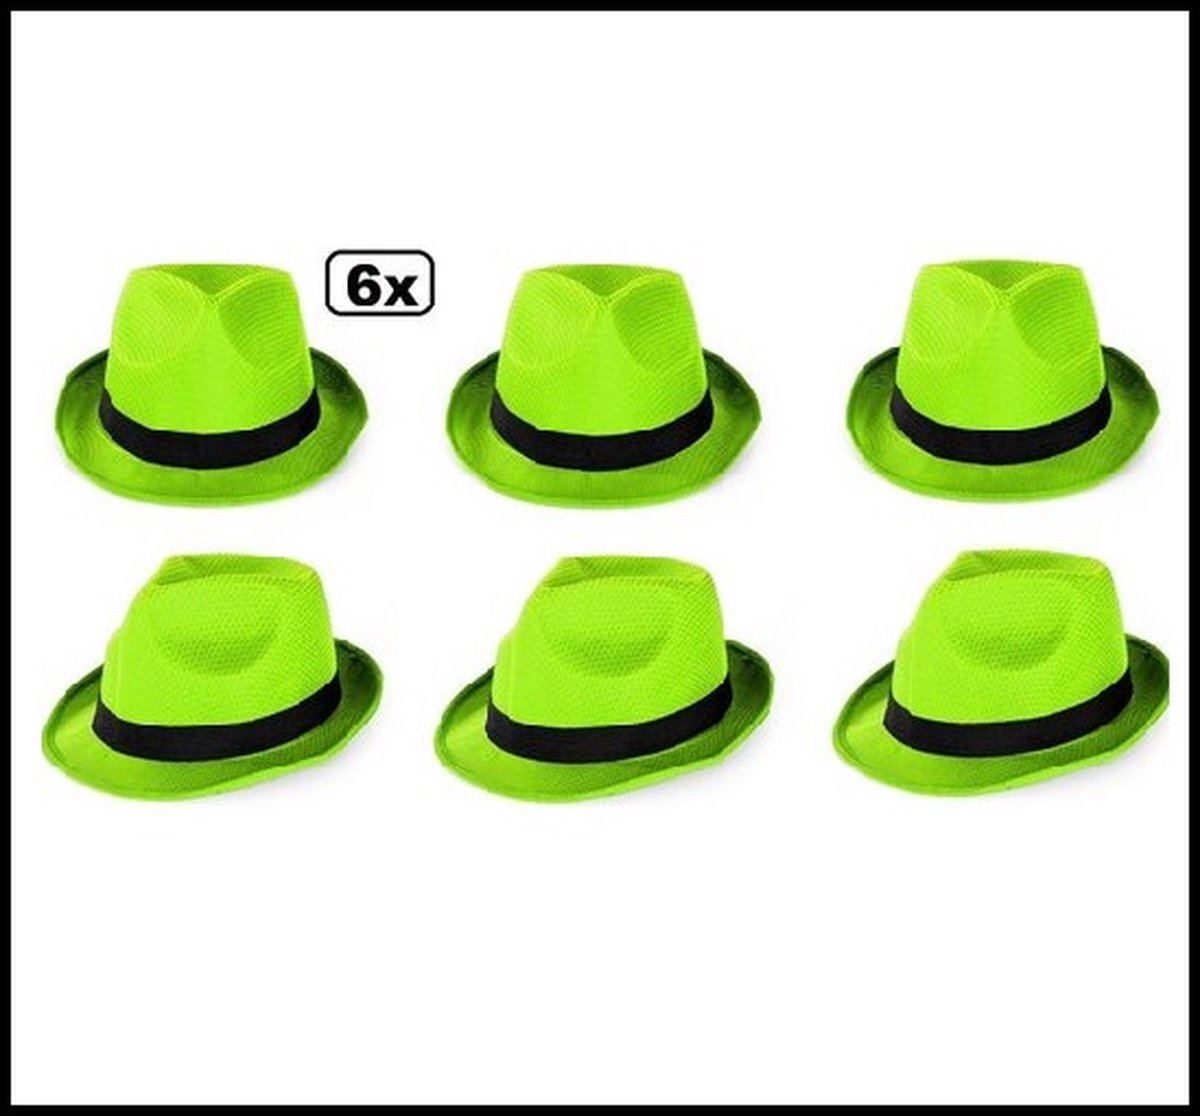 Soirée à Thema party - 6x Chapeau vert fluo avec bande noire